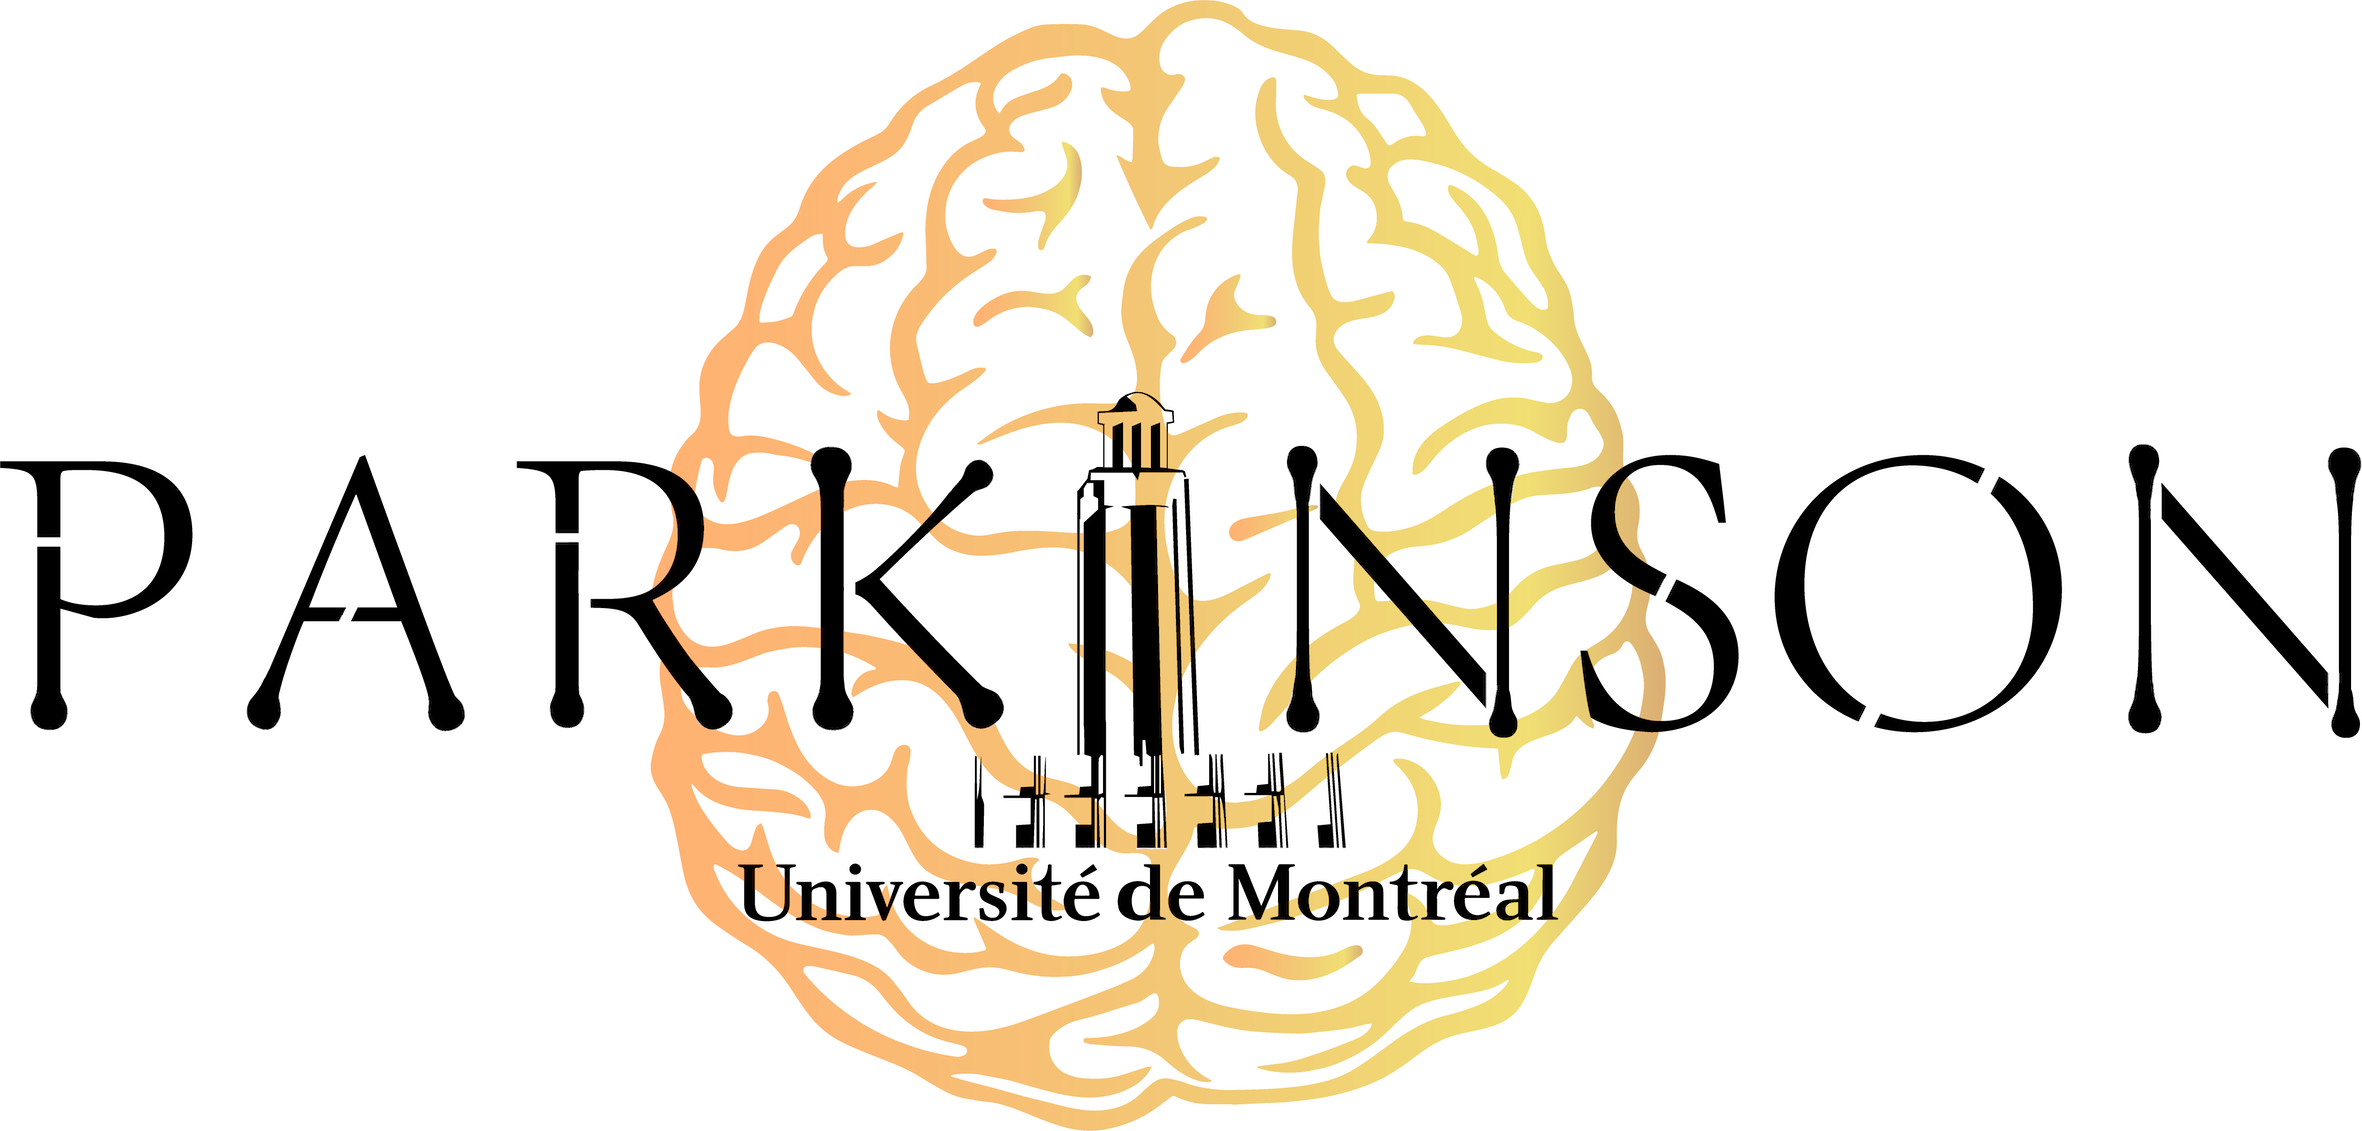 Le comité Parkinson de l'Université de Montréal